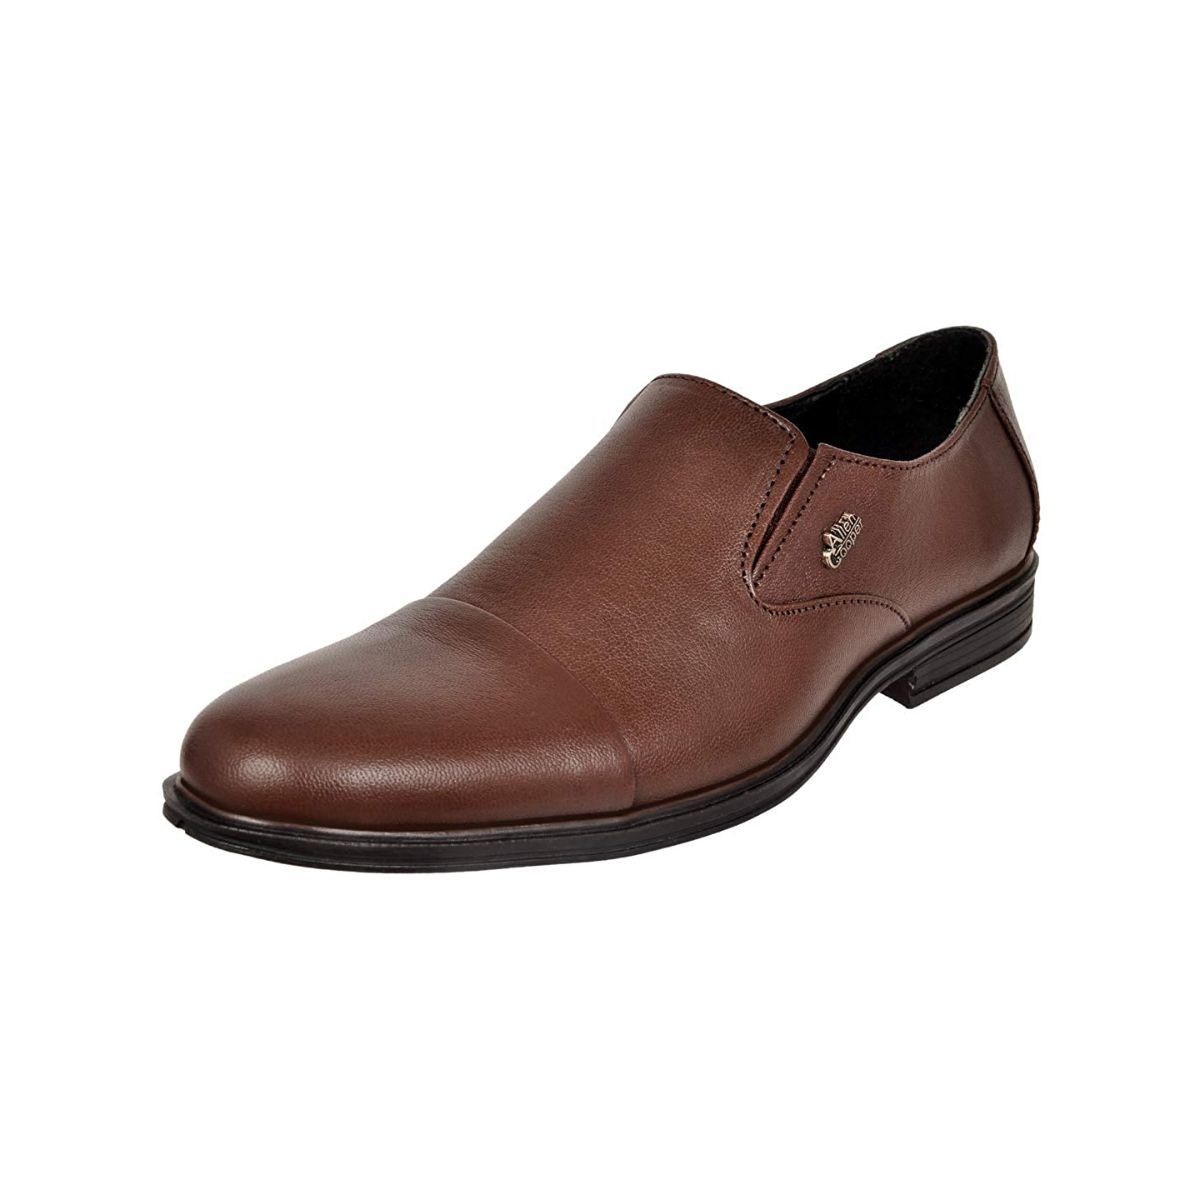 Allen Cooper Brown Formal Shoes For Men - 6